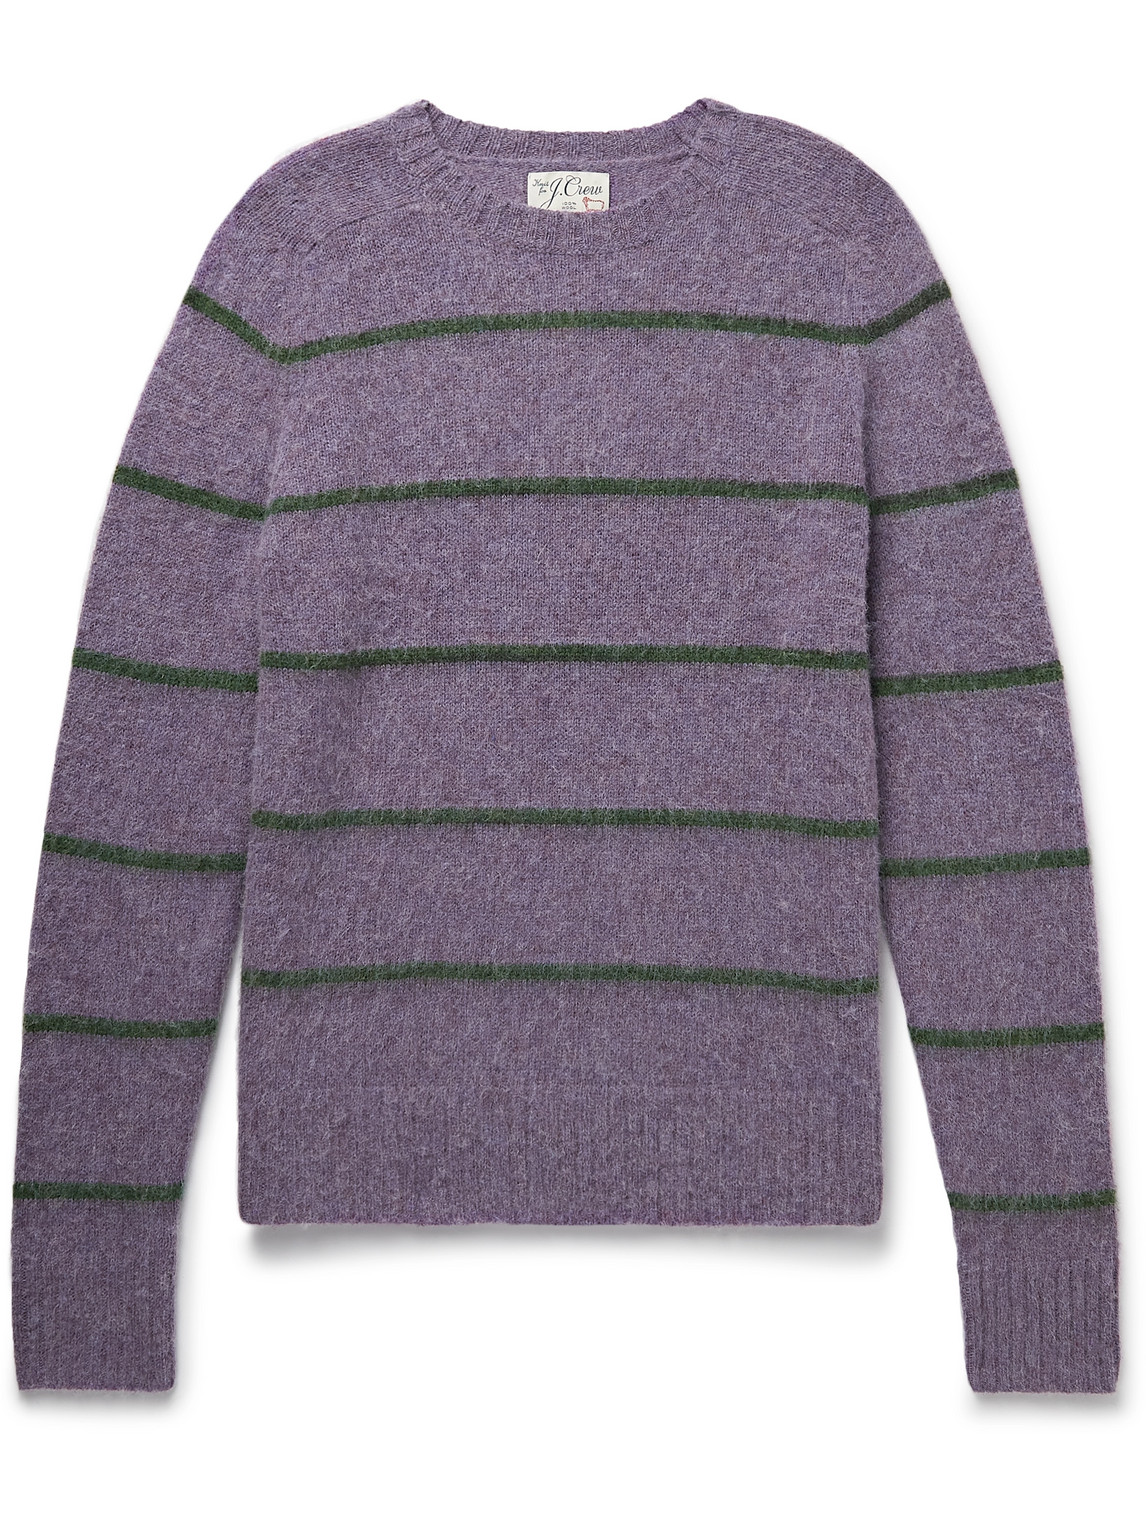 J.crew Shetland Marvin Striped Wool Sweater In Purple